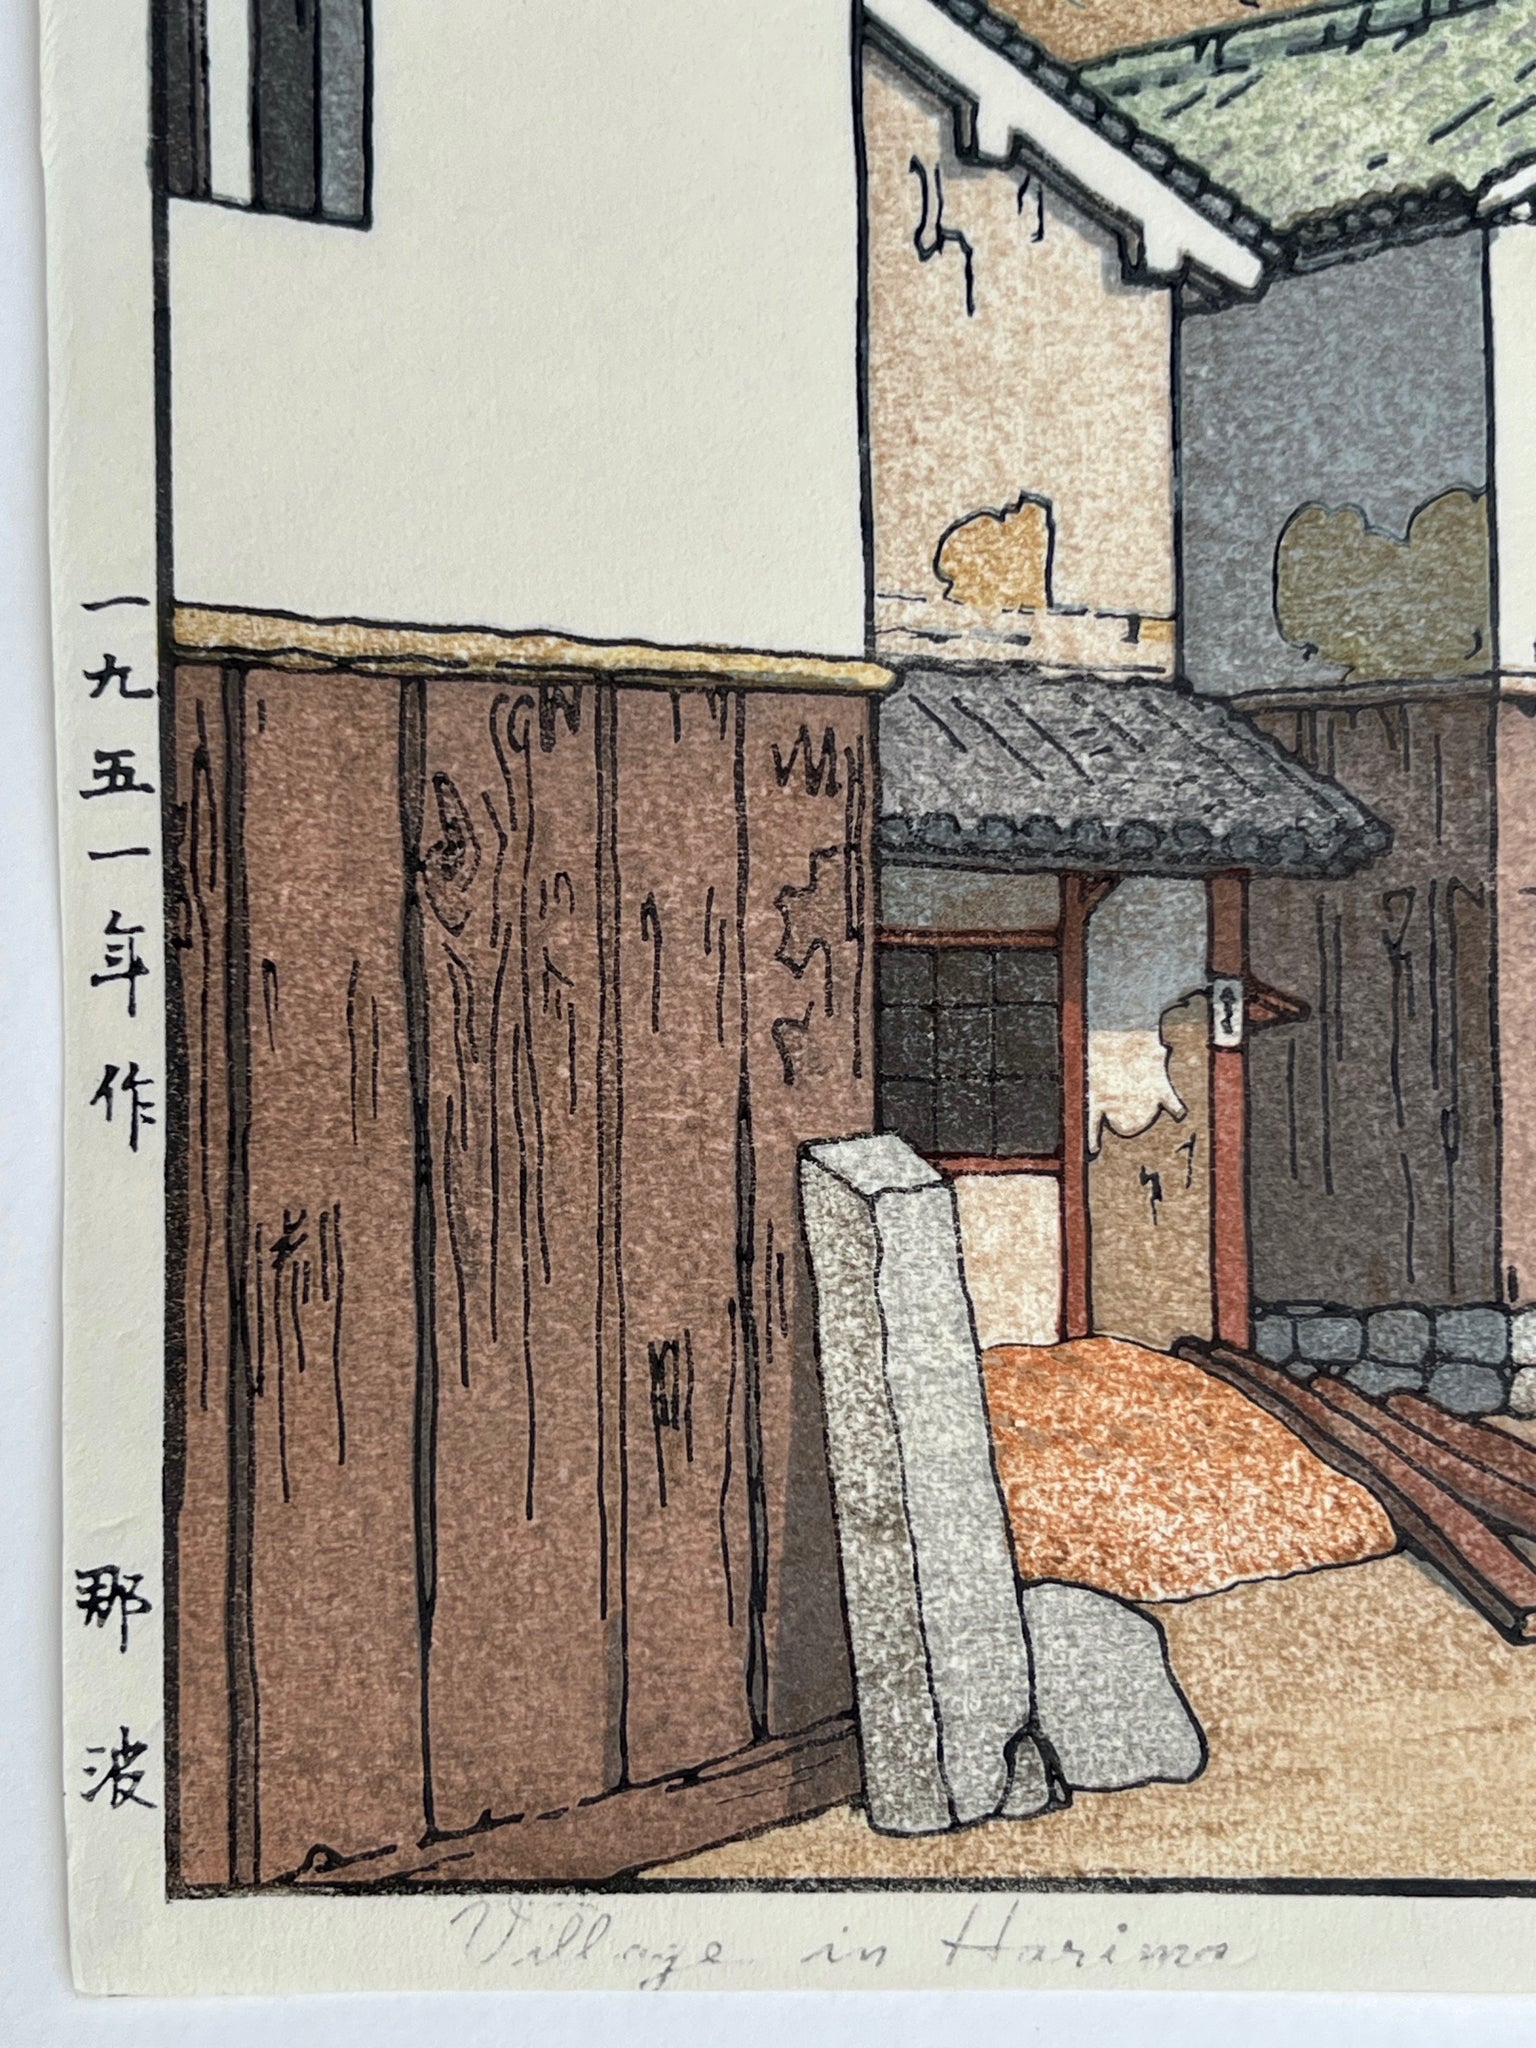 Village à Harima, coin inférieur gauche, date et titre en japonais, titre en anglais, bâtiment japonais.